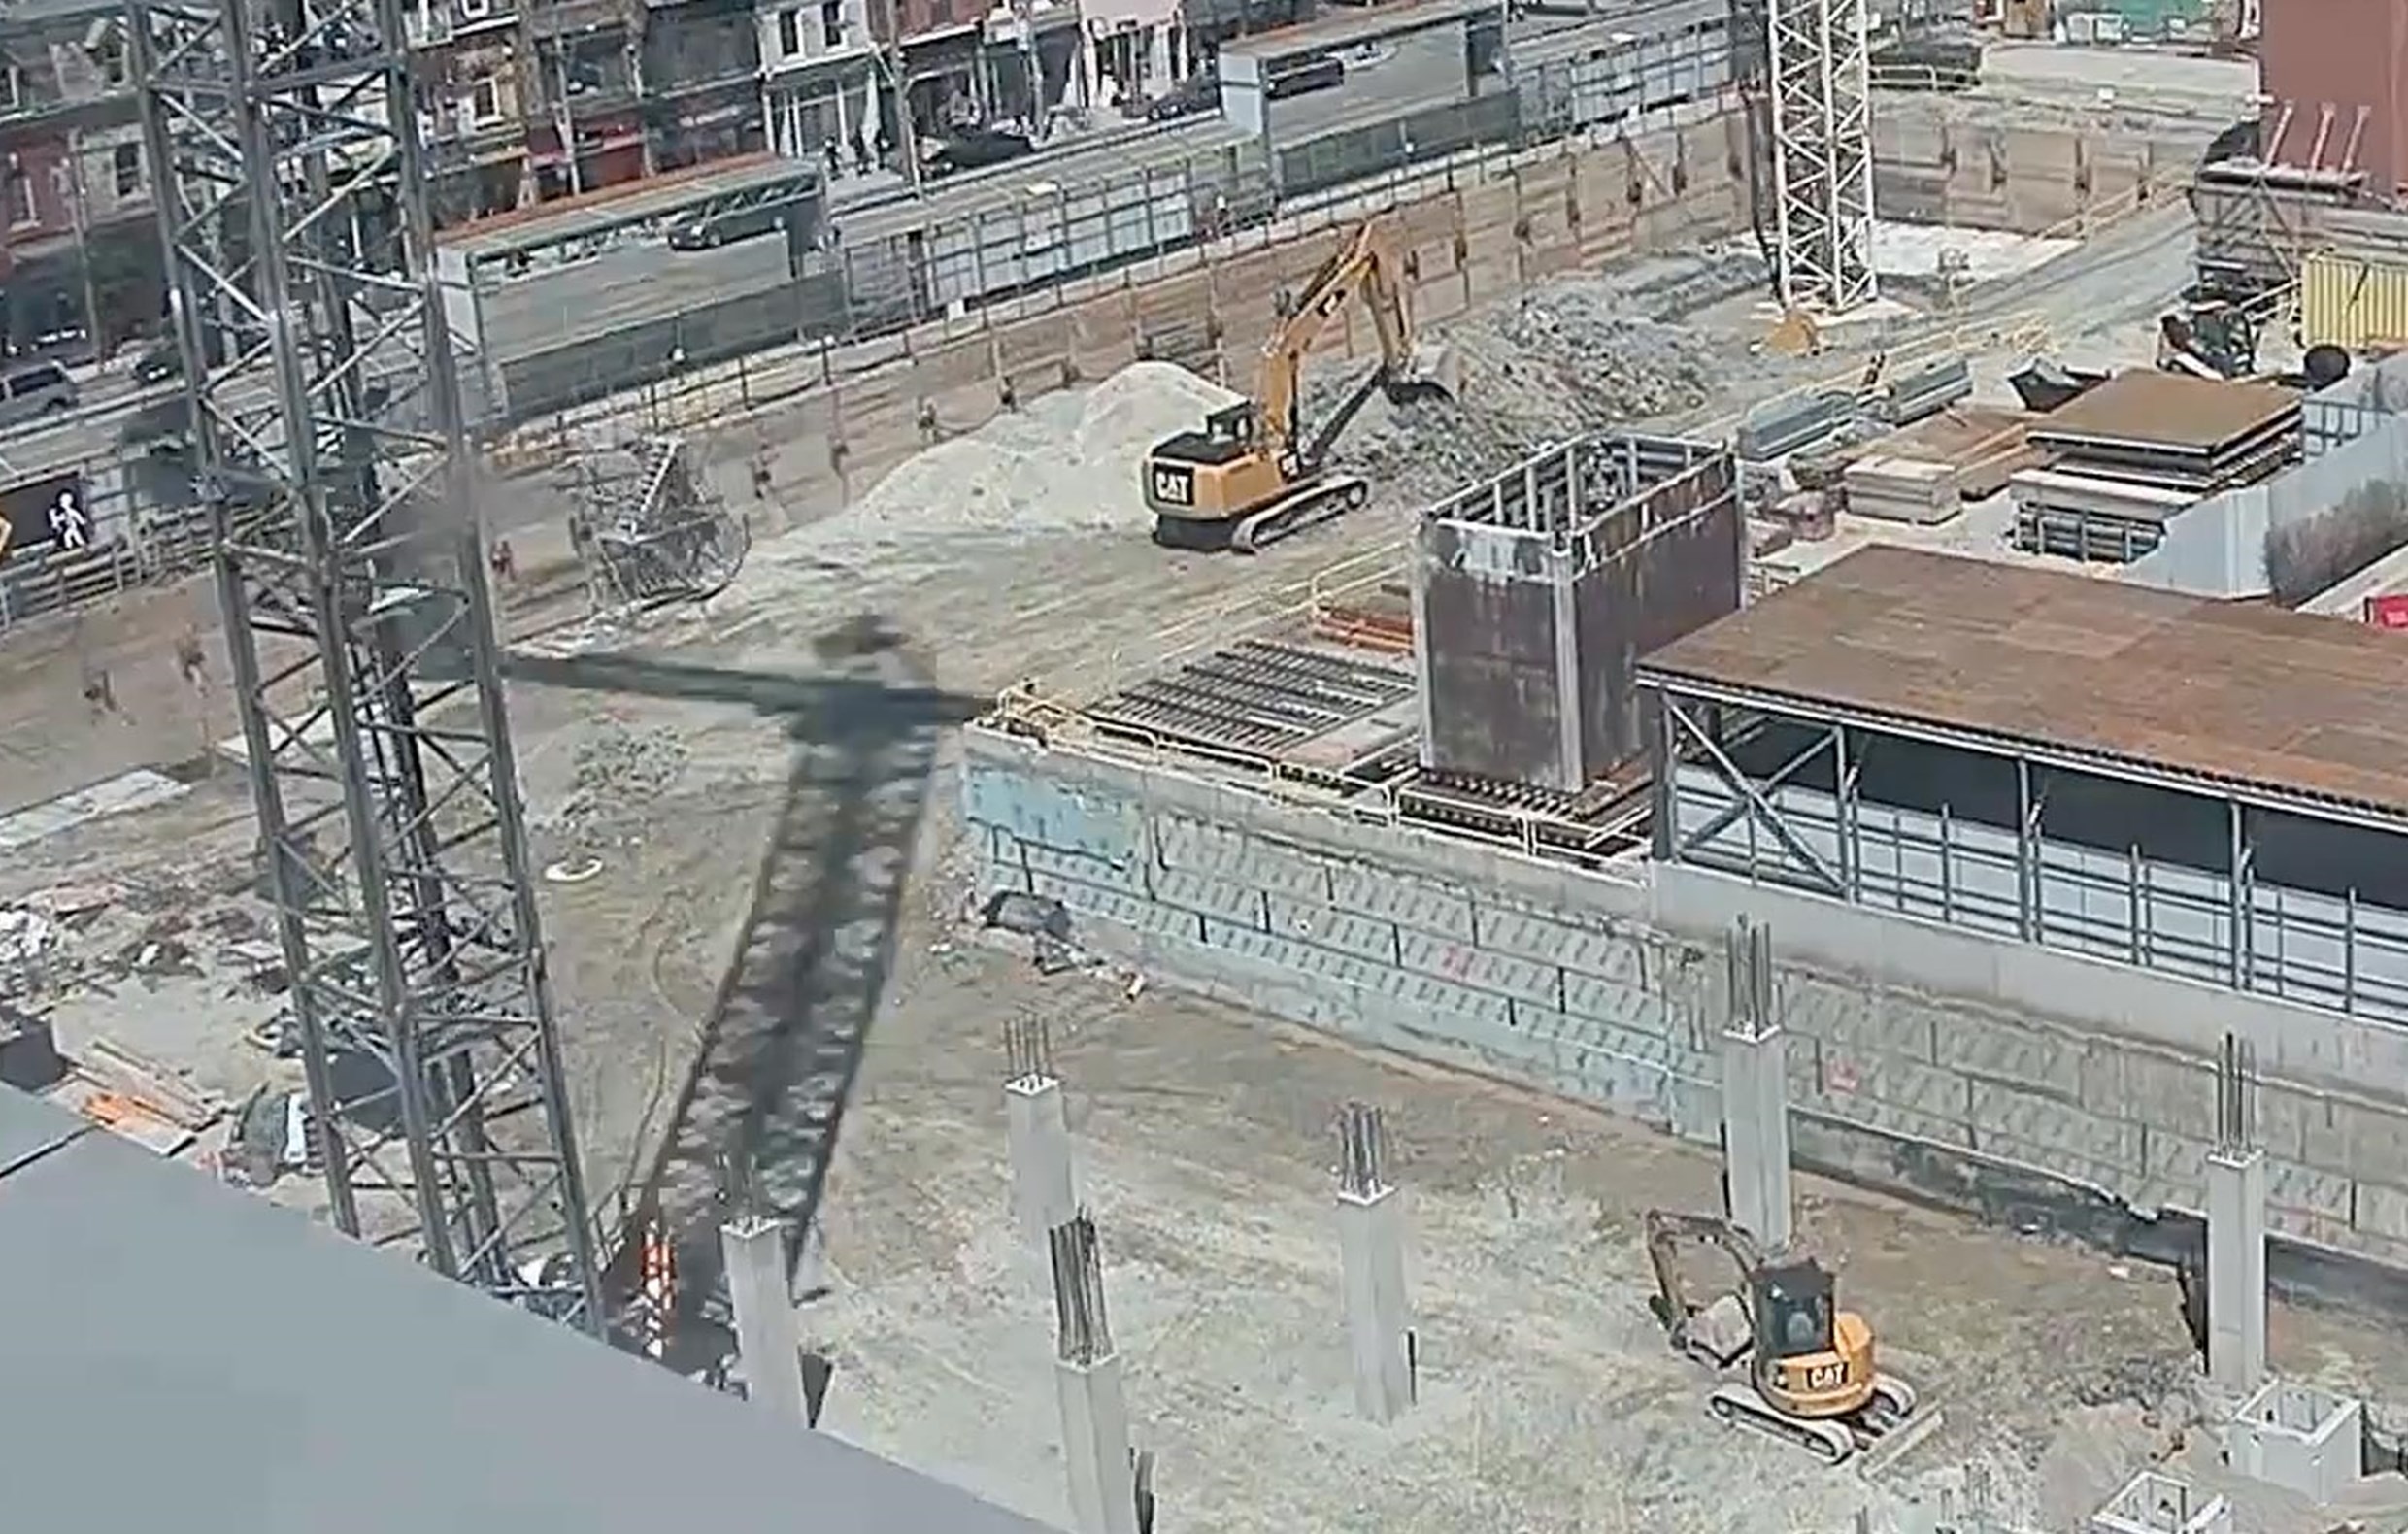 Queen Street Redevelopment Construction Update - Video screenshot from April 2018